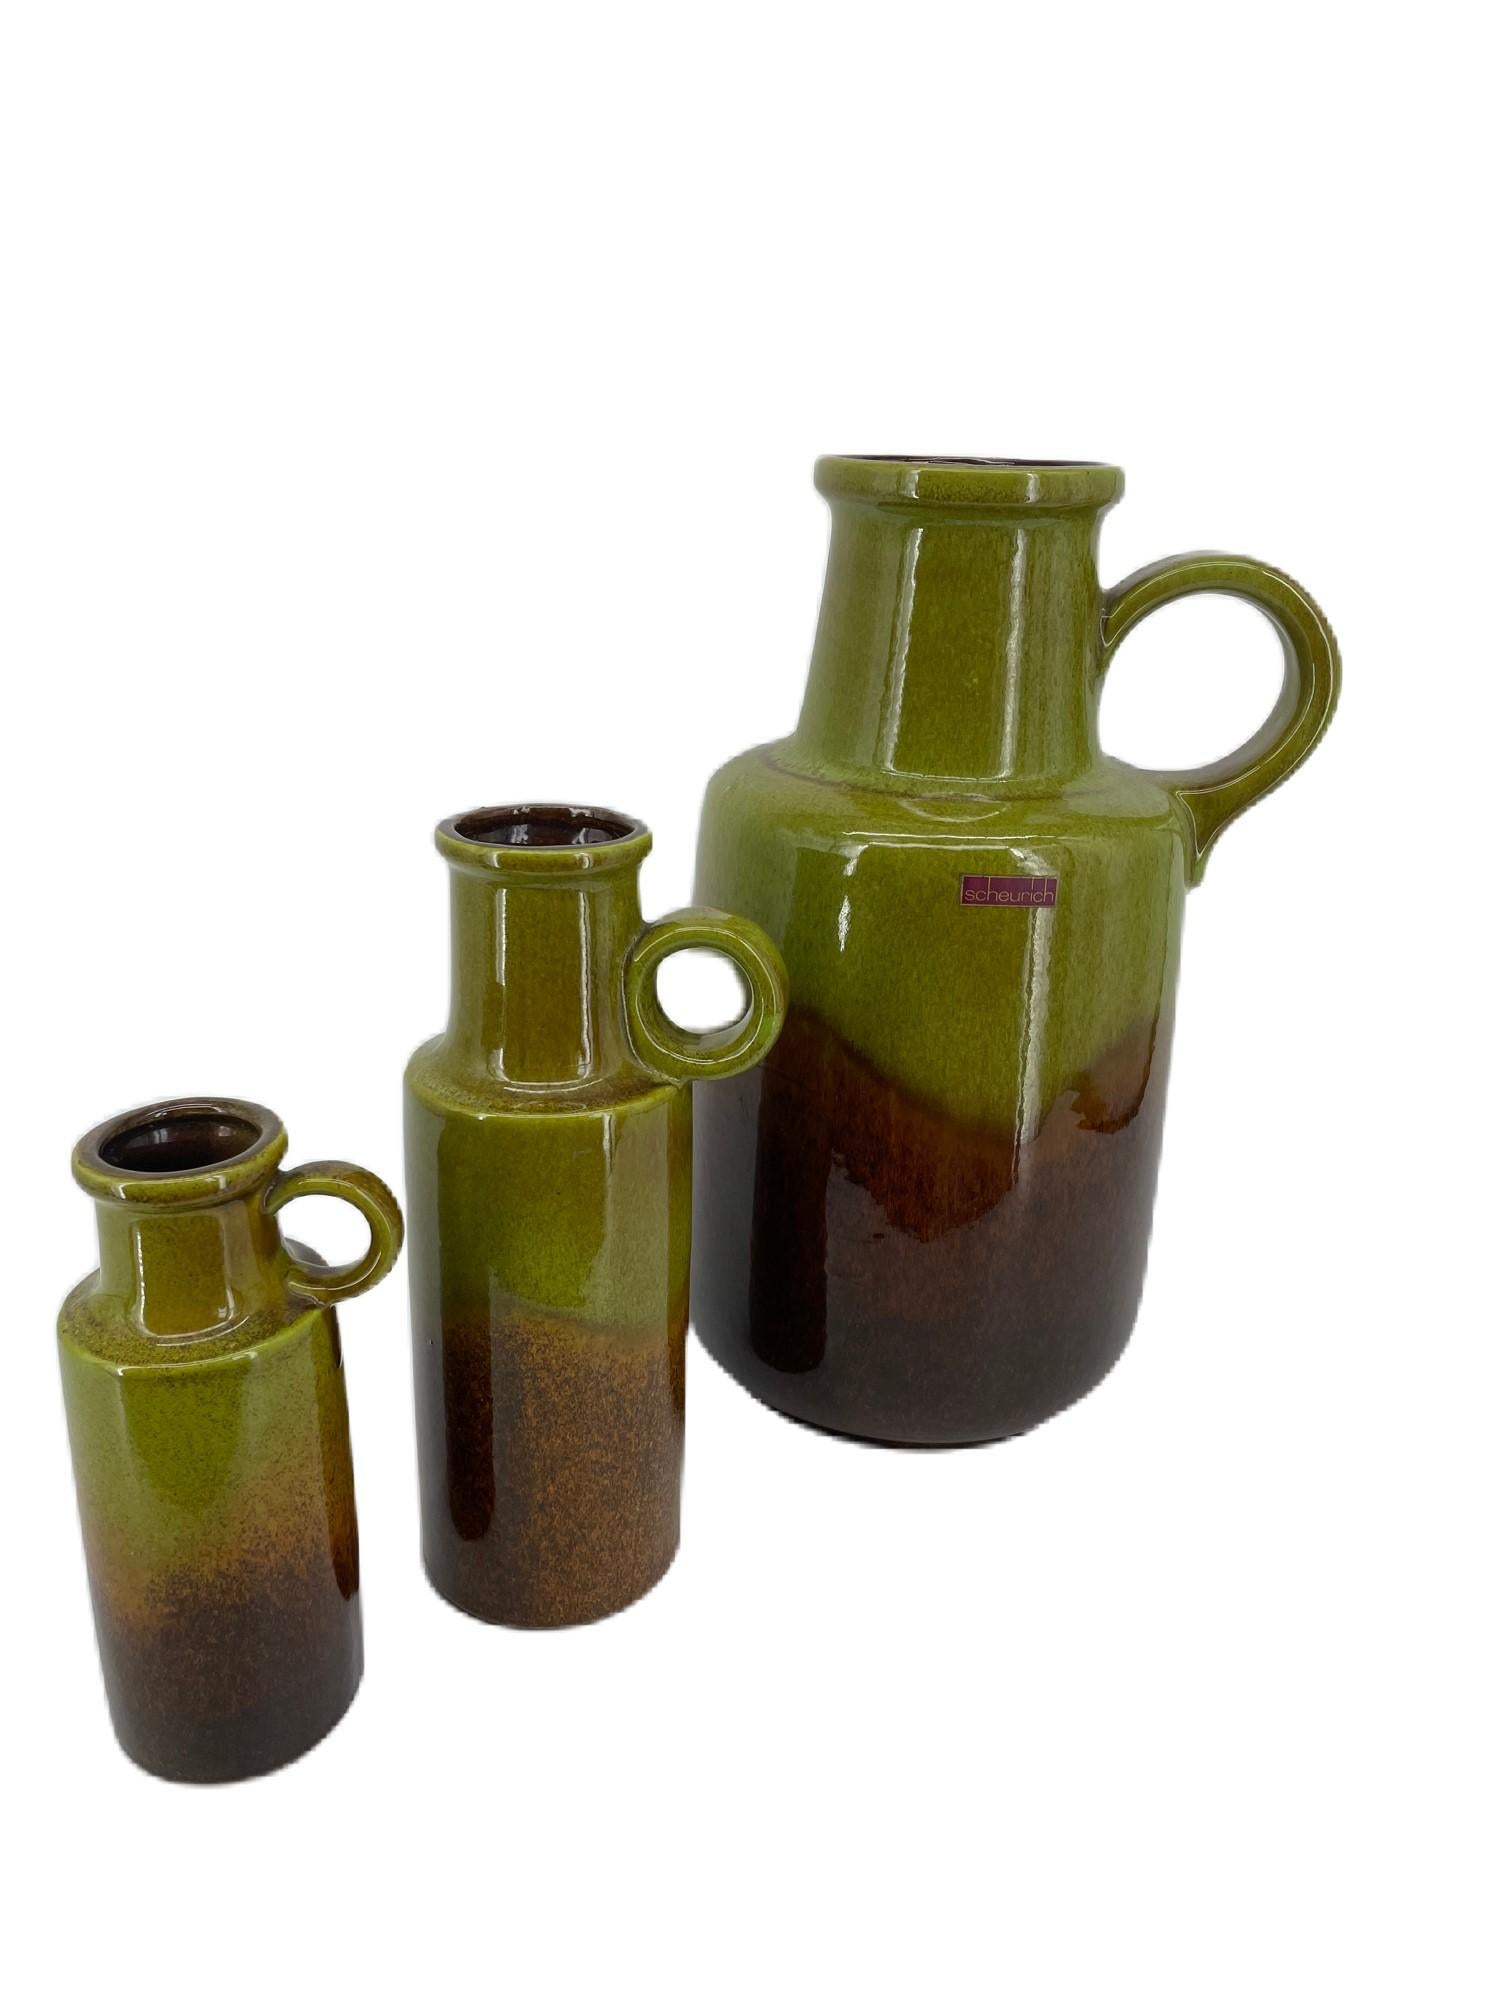 Lot de 3 vases à lave grasse Scheurich rétro vintage de l'Allemagne de l'Ouest / vases à oreilles. Couleur vert-brun. Modèle n° 408-40, 401-28, 401-20. 
Mesures : L. 5.12 in ; H. 11.02 in ; P. 5.12 in ; 
W. 13 cm ; H. 28 cm ; D. 13 cm ; 
W. 3.94